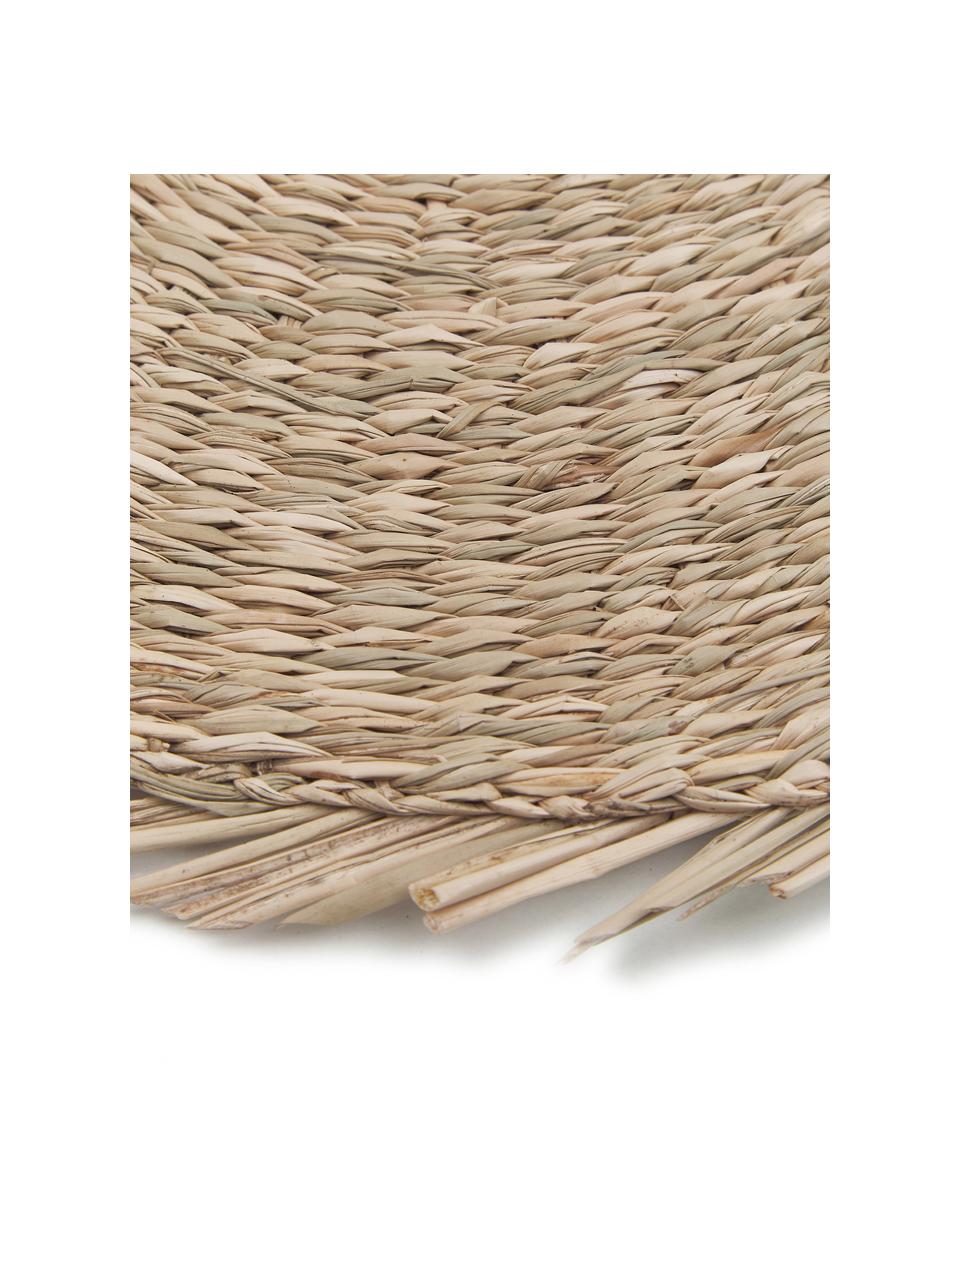 Okrągła podkładka z trawy morskiej Whirl, Trawa morska, Beżowy, Ø 38 cm